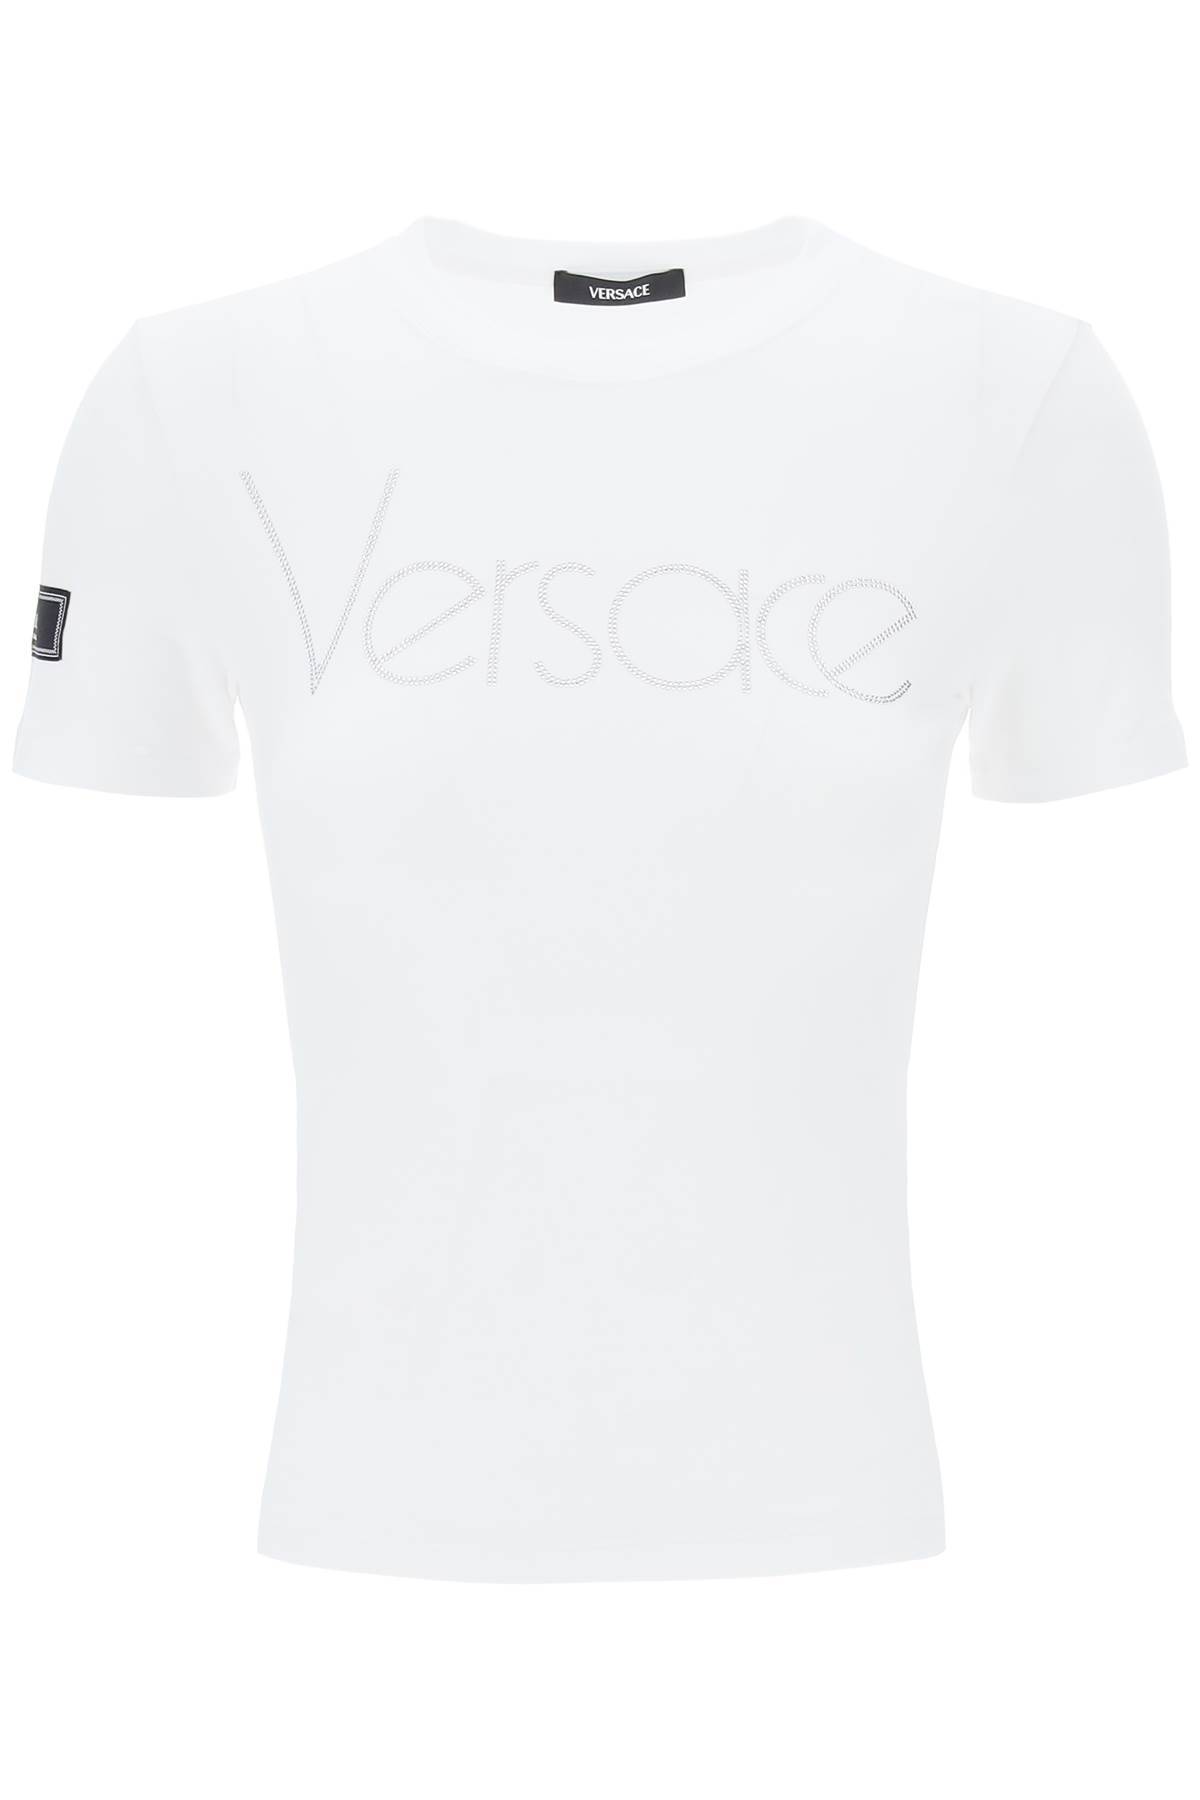 Versace VERSACE "logo rhinestone t-shirt